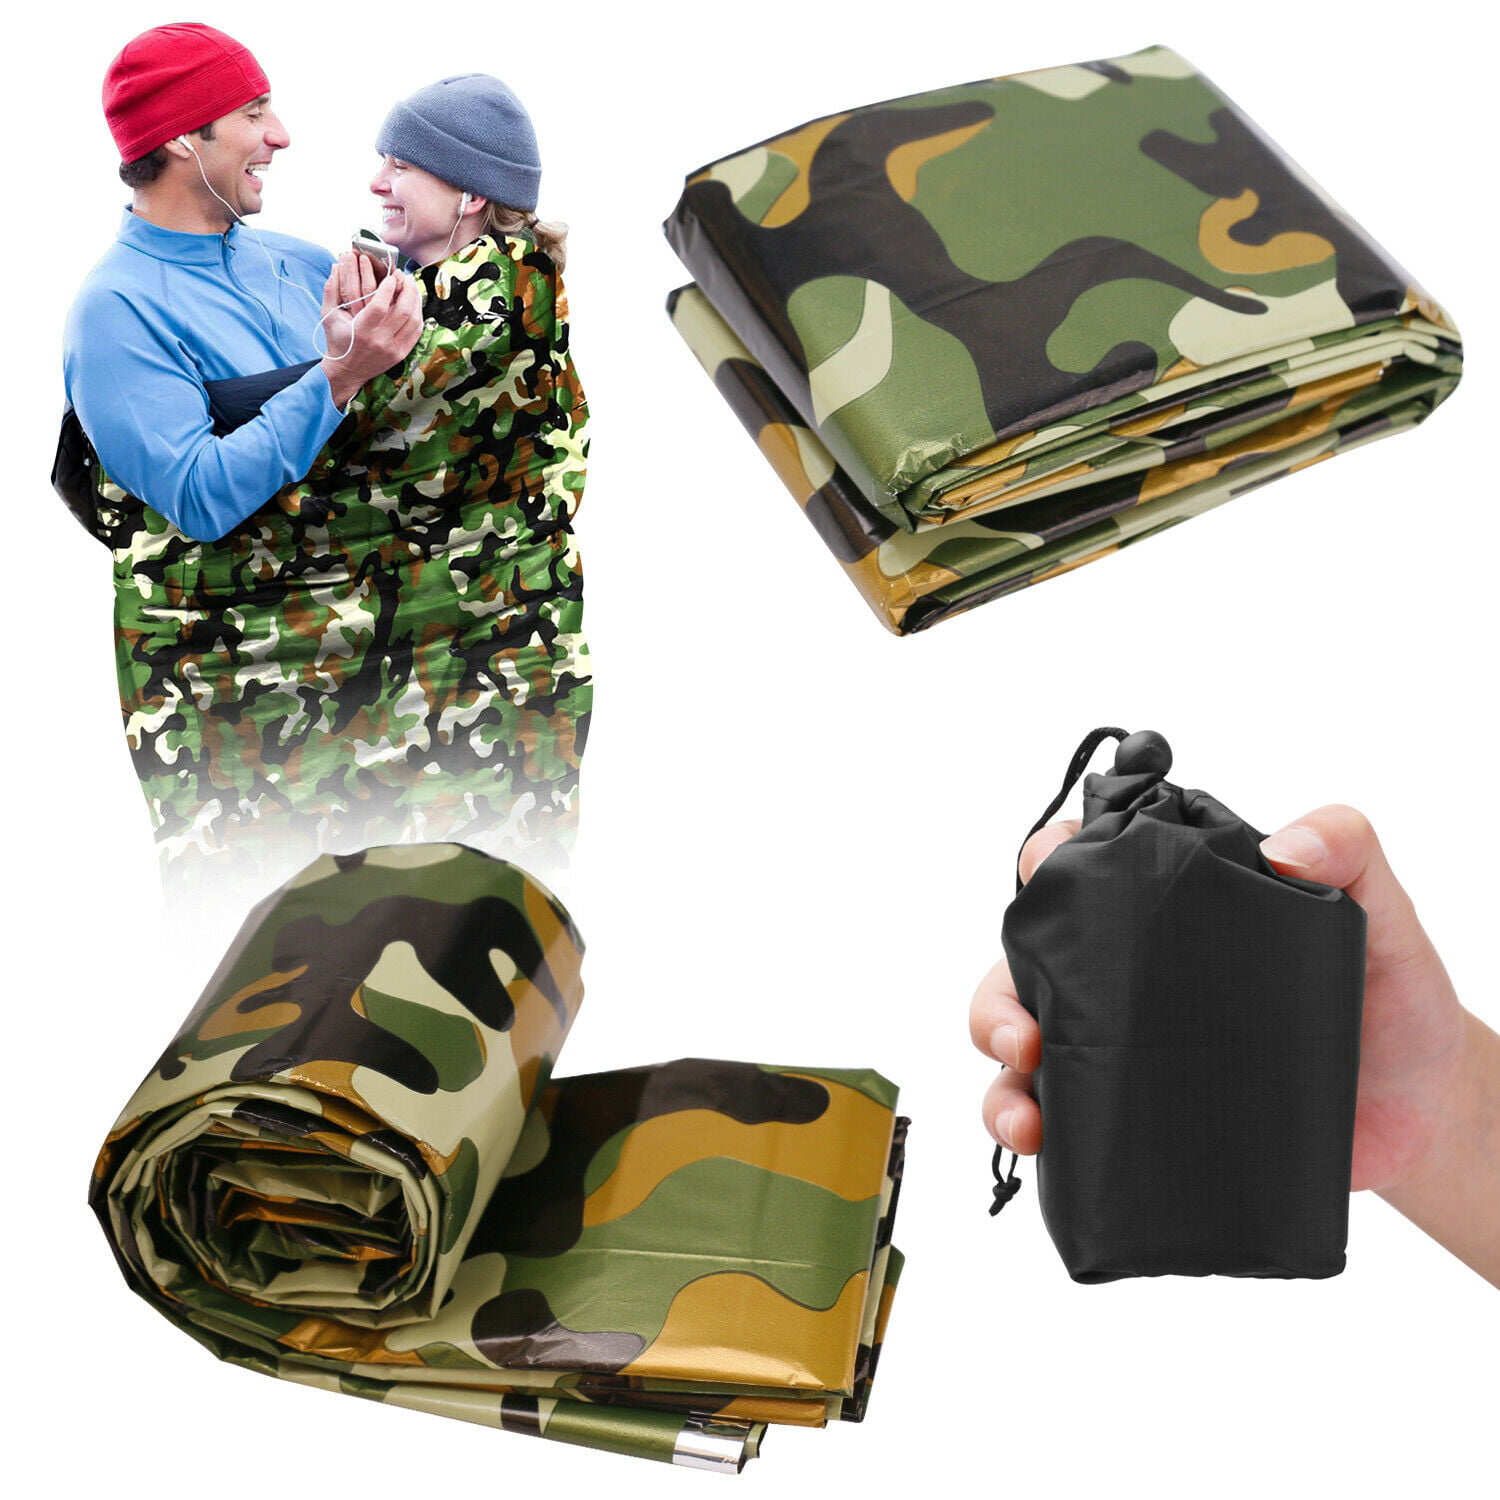 Camouflage Waterproof Reusable Emergency Sleeping Bag Thermal Survival Camping